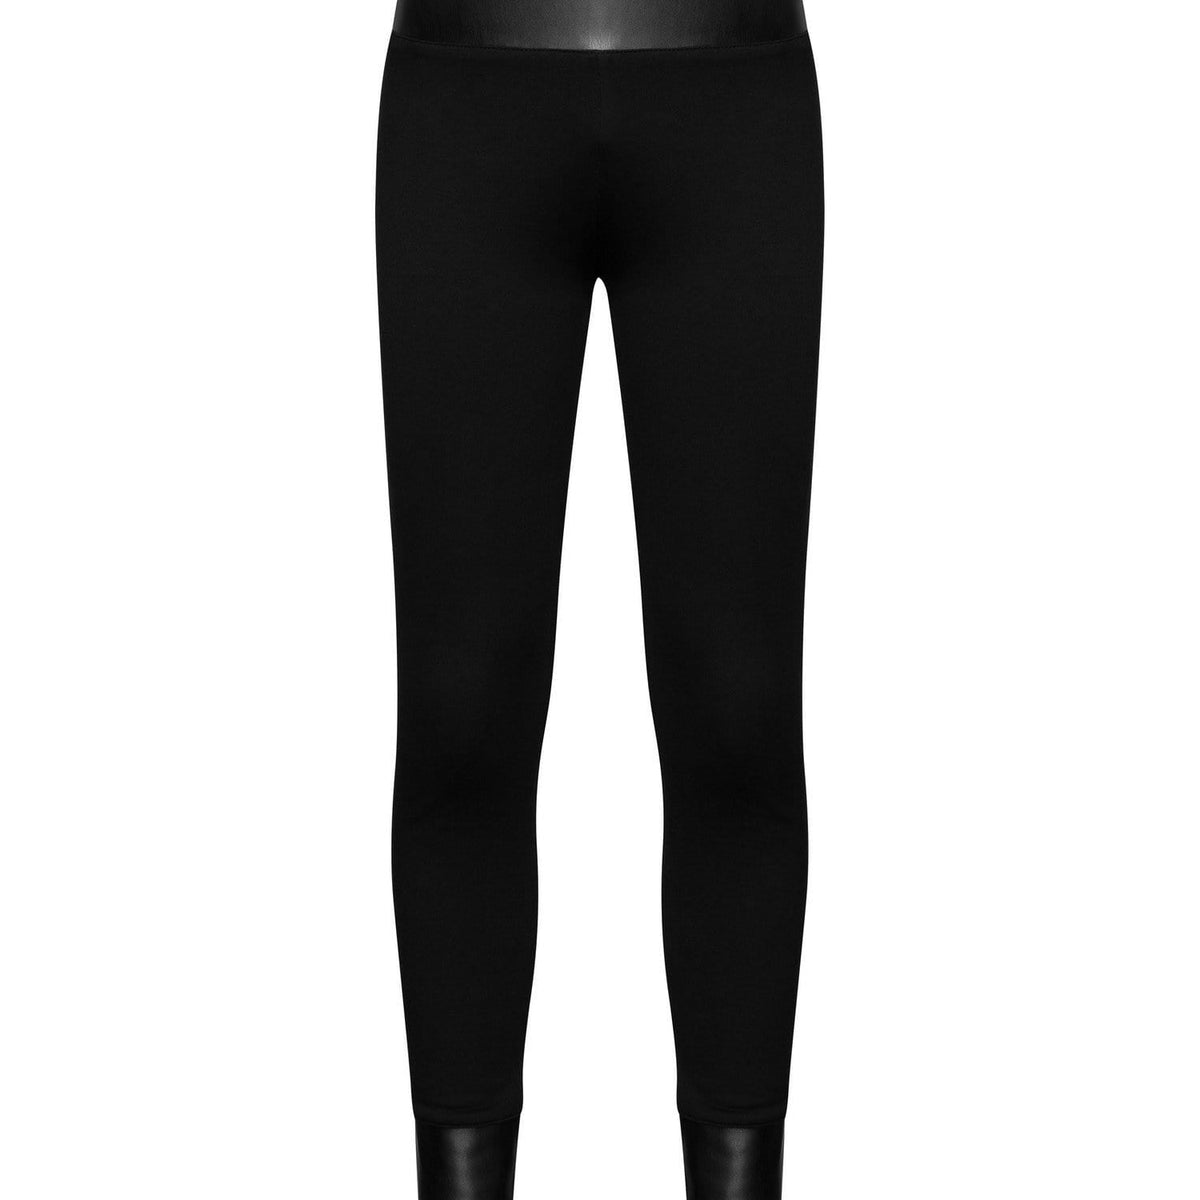 https://mdnt45.com/cdn/shop/products/mdnt45-women-s-bottoms-high-waist-corset-leggings-30177457078469.jpg?crop=center&height=1200&v=1695127441&width=1200